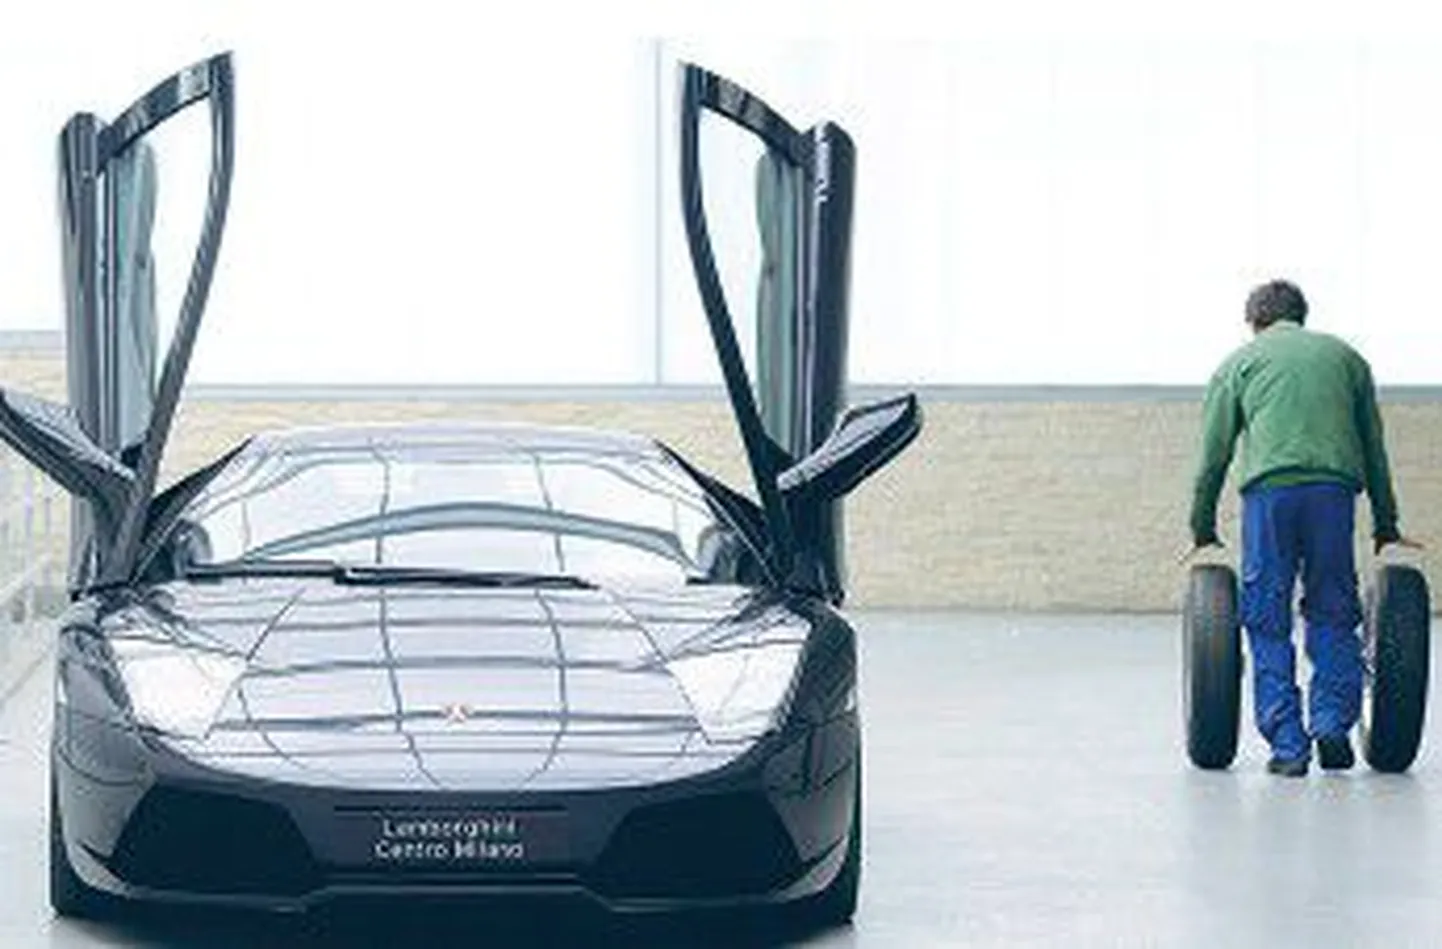 Полицейские рейды и повышение налогов на роскошь при­вели к снижению объема продаж дорогих автомобилей Lam­borghini в январе на 53 процента.